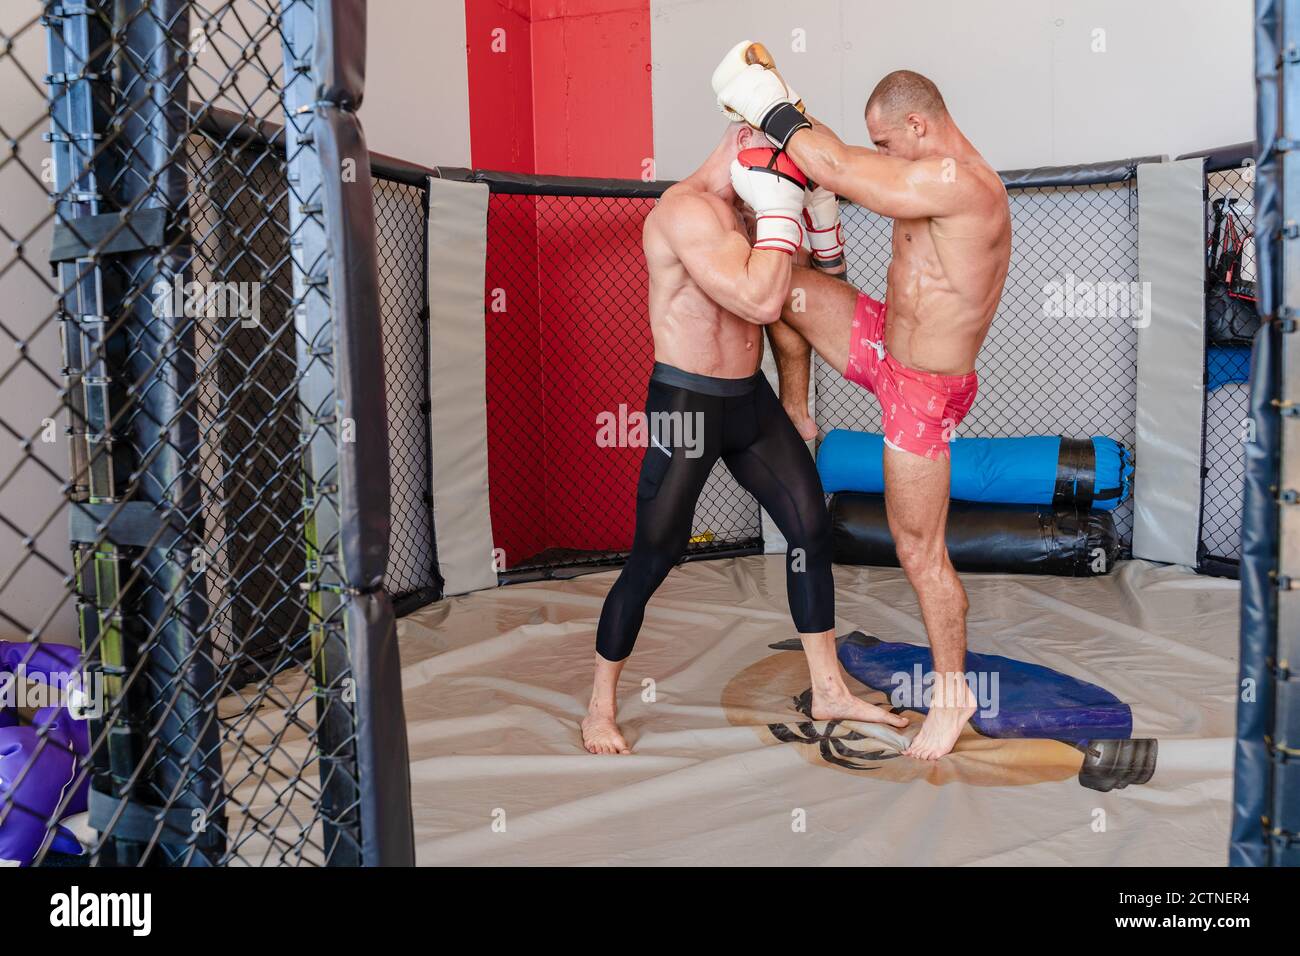 Vue latérale des baskets de pratique de boxer pour homme avec un instructeur fort sur le ring de boxe pendant l'entraînement Banque D'Images